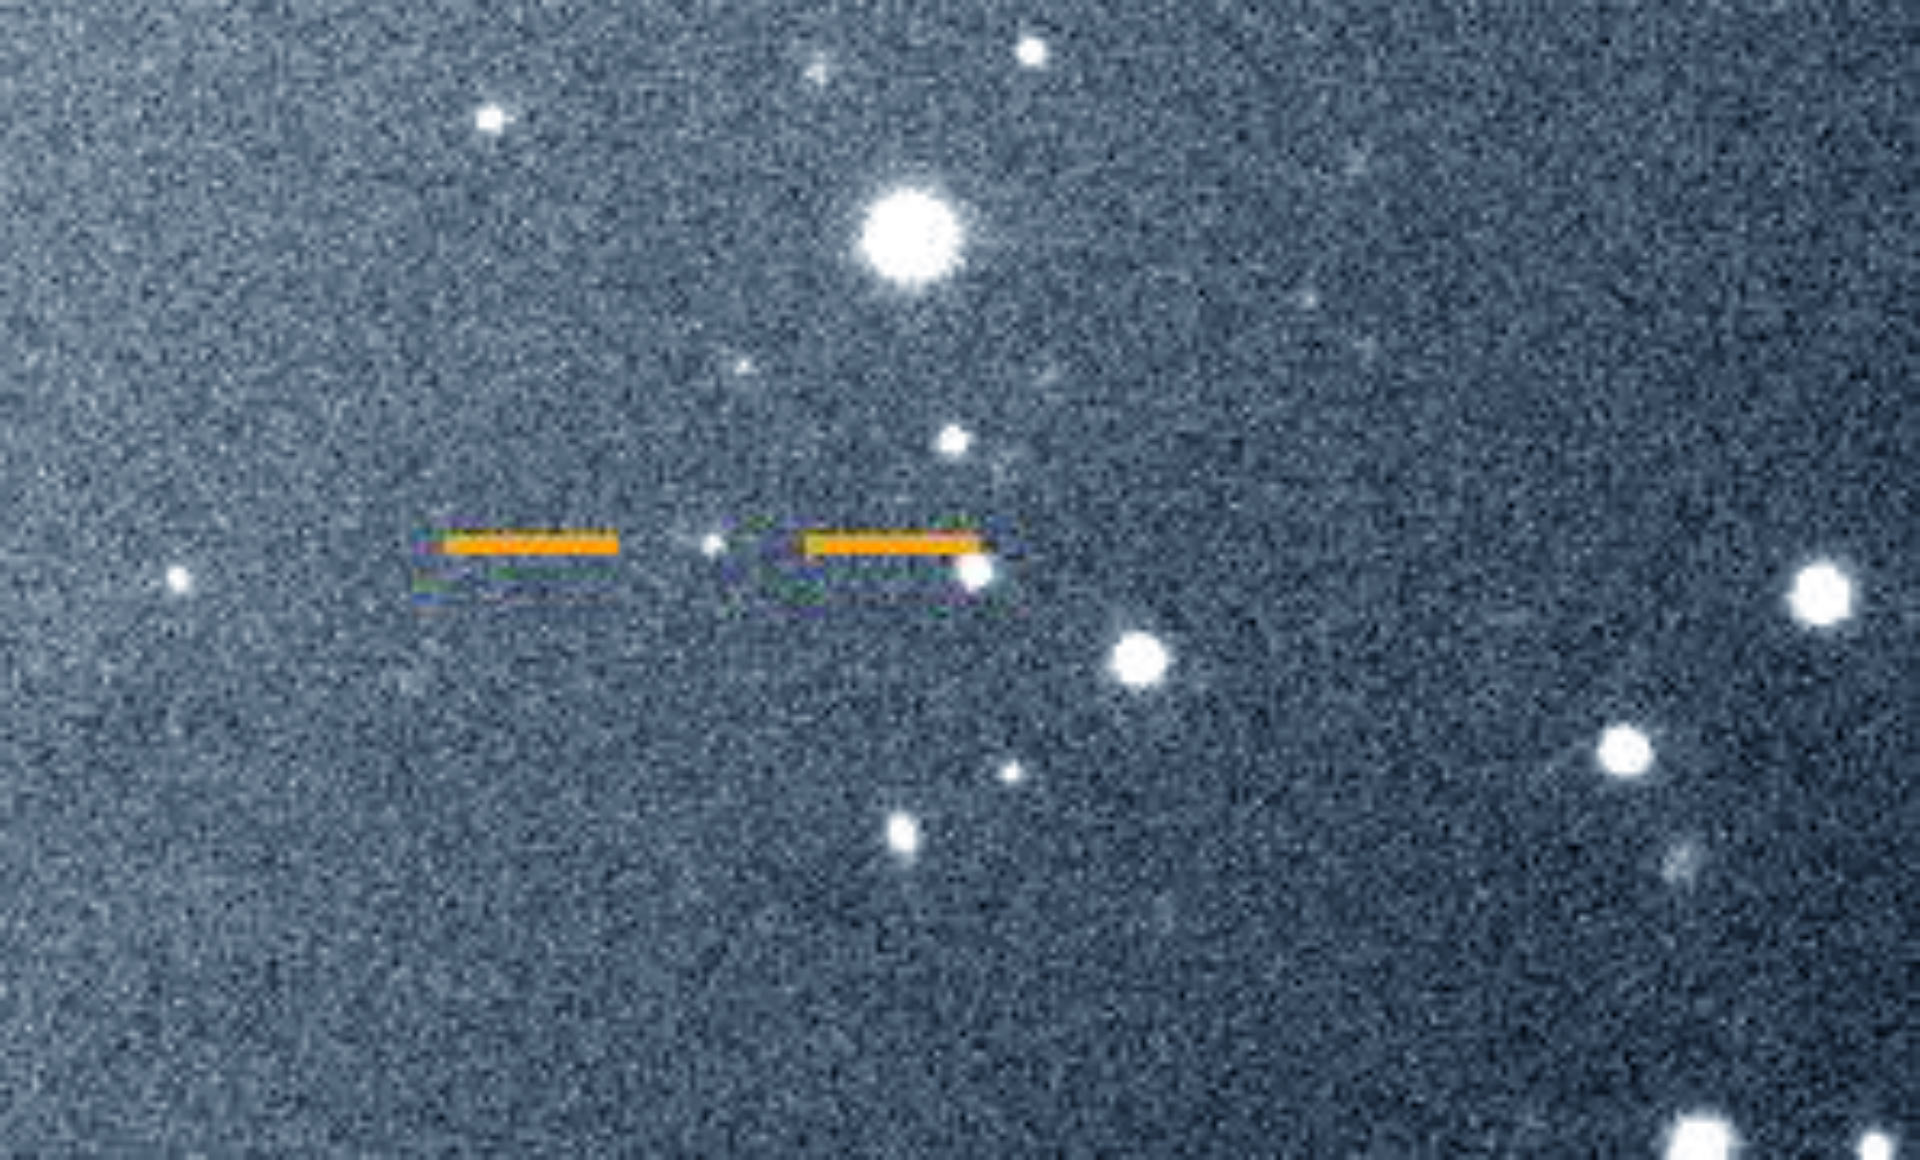 ภาพที่ค้นพบดวงจันทร์วาเลทูโด (Valetudo) ถ่ายโดยกล้องแมกเจลแลนในเดือนพฤษภาคม 2561 ดาวพฤหัสบดีอยู่พ้นกรอบภาพออกไปทางซ้ายบน